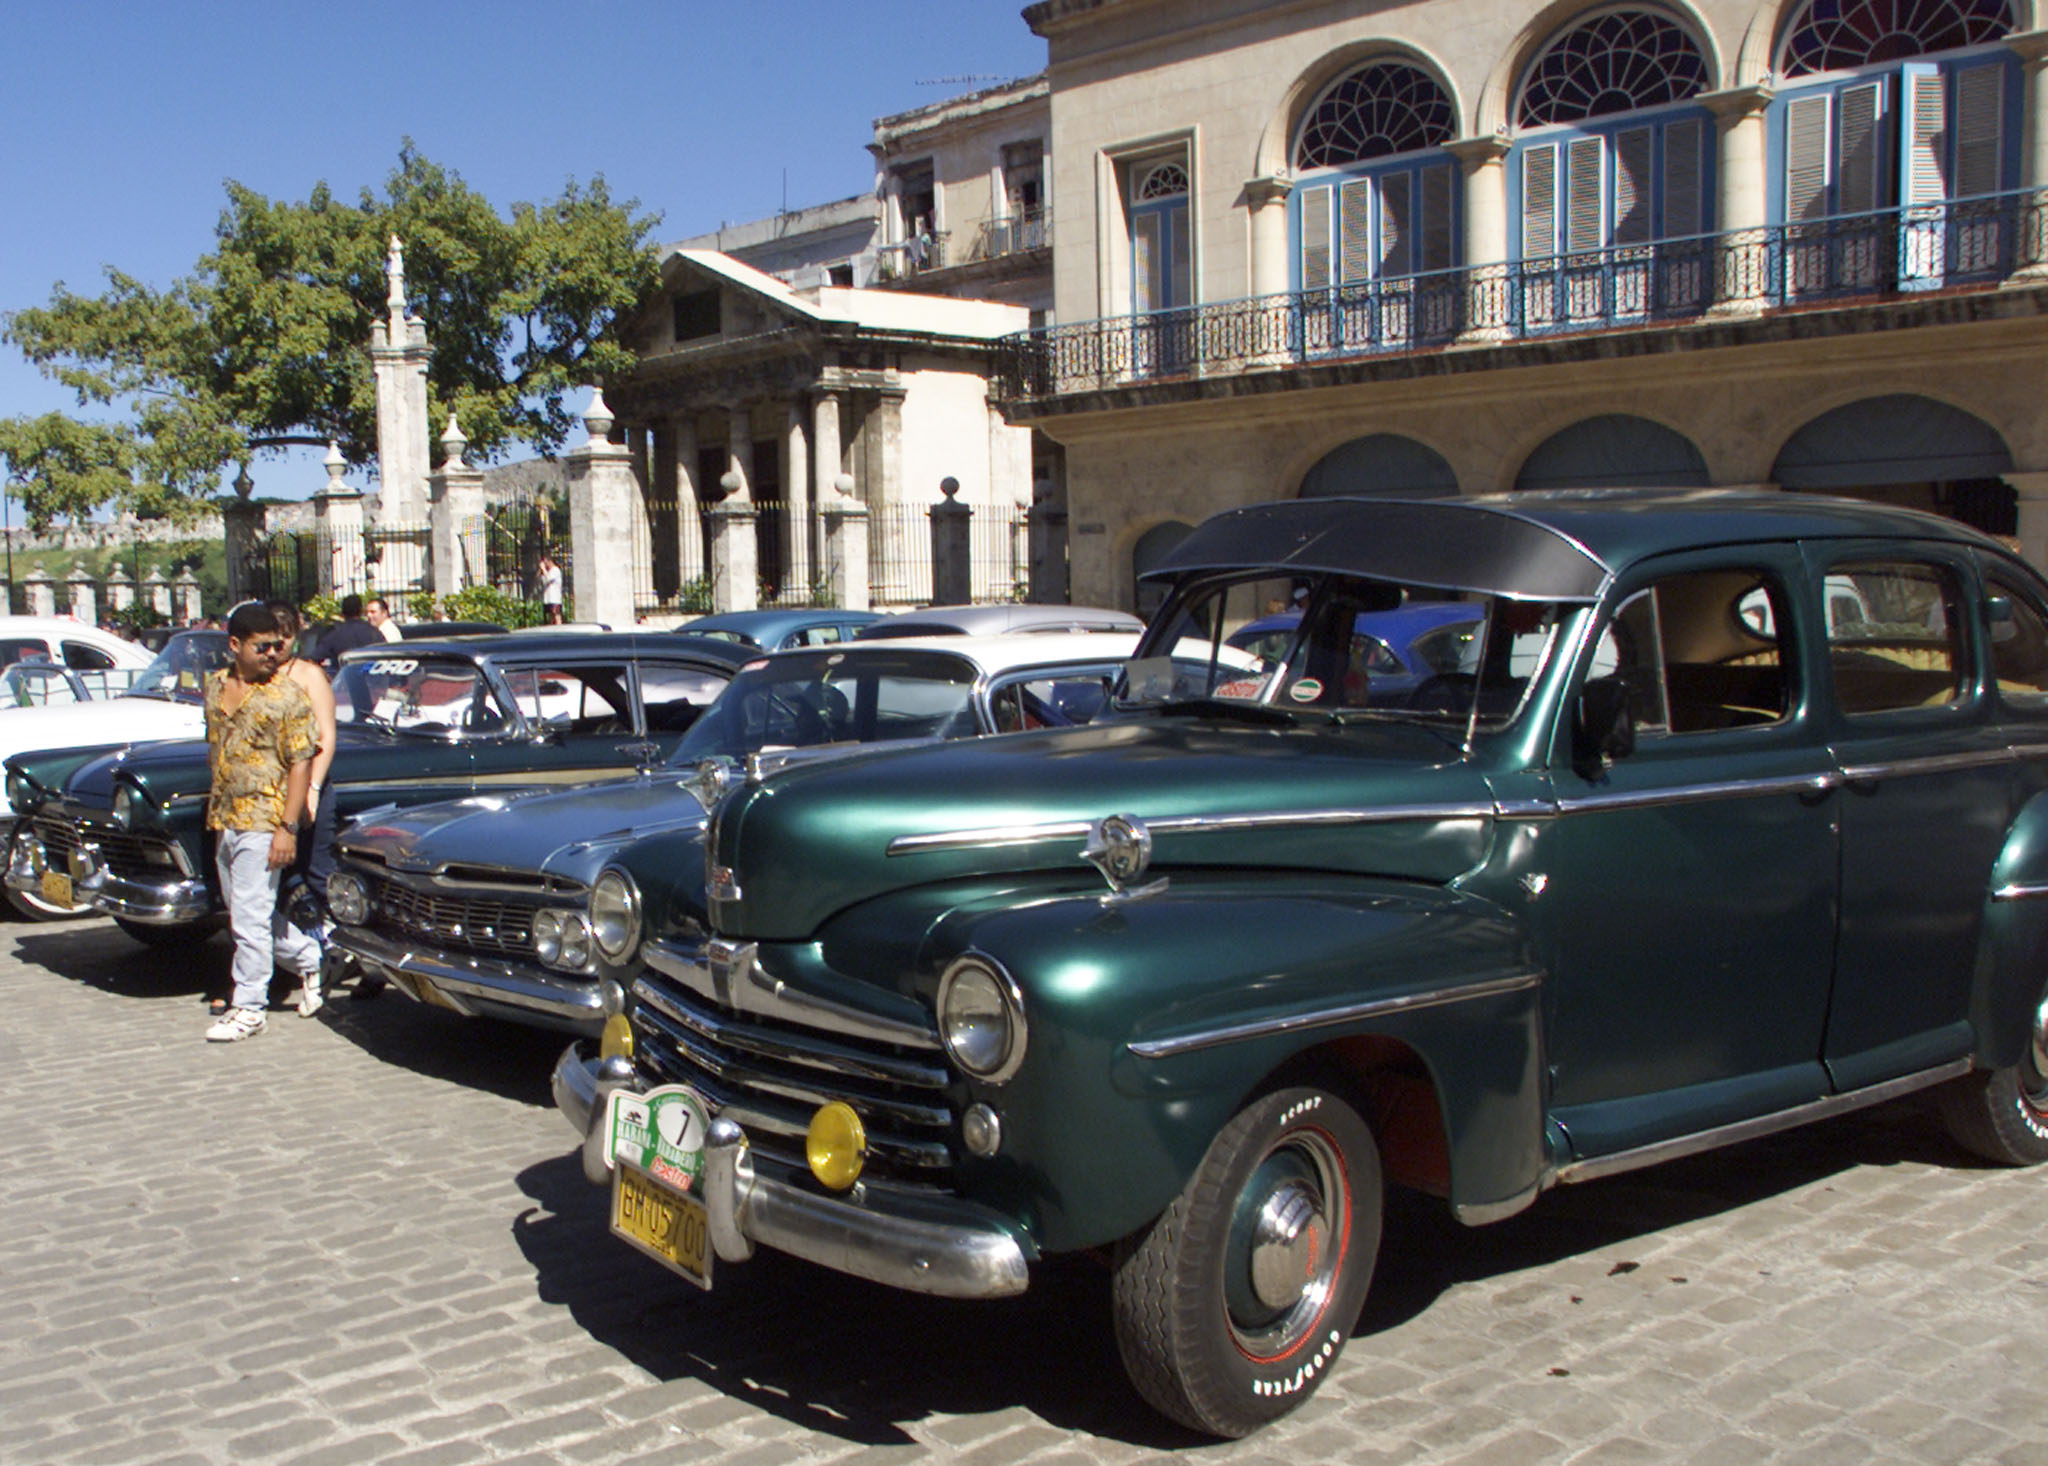 A Cuban man walks past vintage US-built cars in Havana. Photo: Reuters